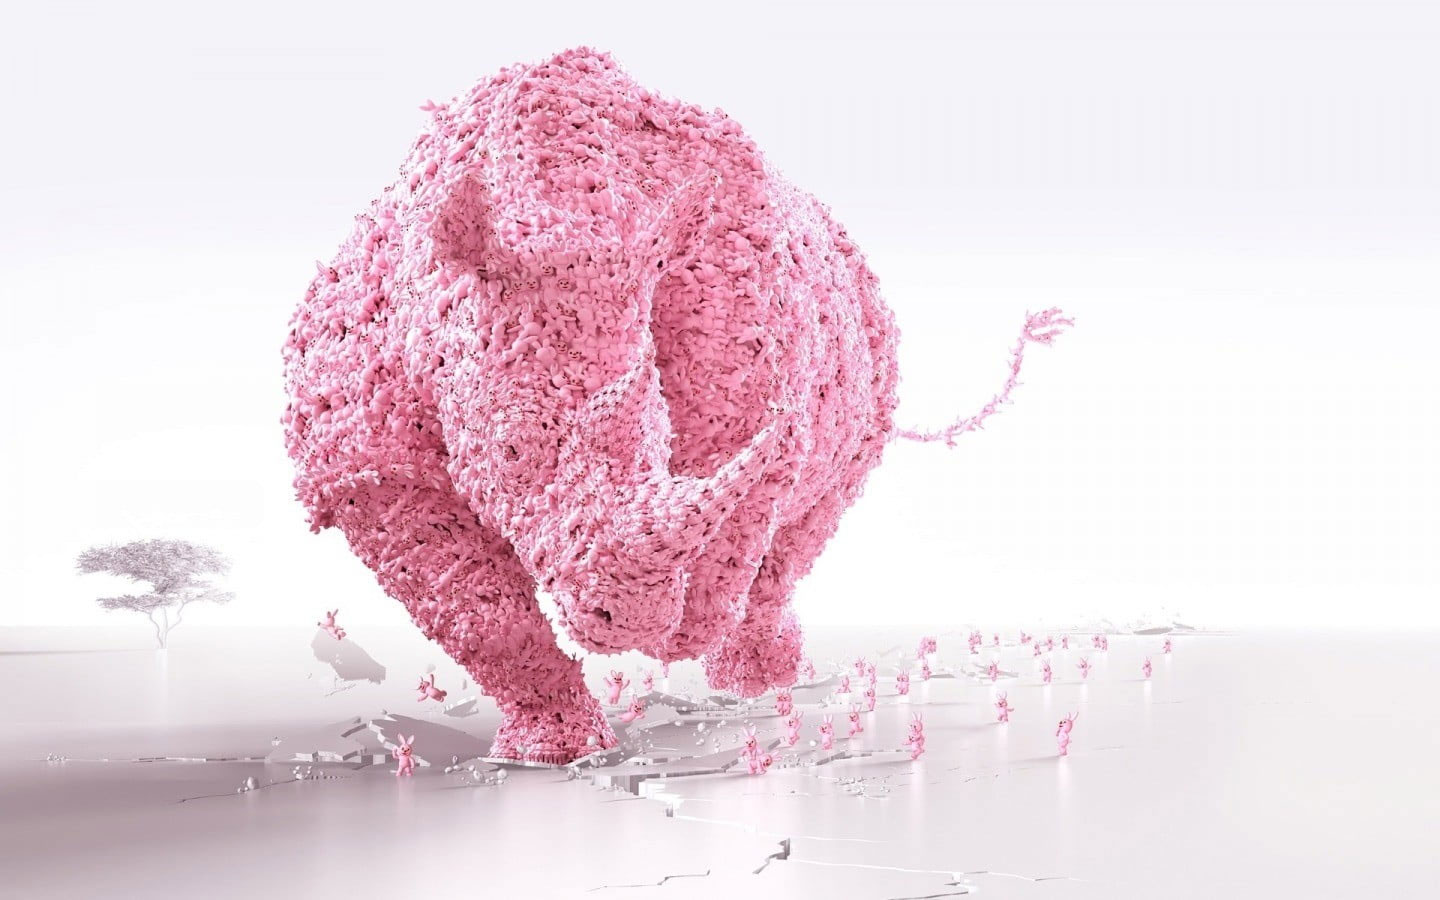 Pink rhinoceros illustration wallpaper, abstract, digital art, render, CGI, Abstract, Empty